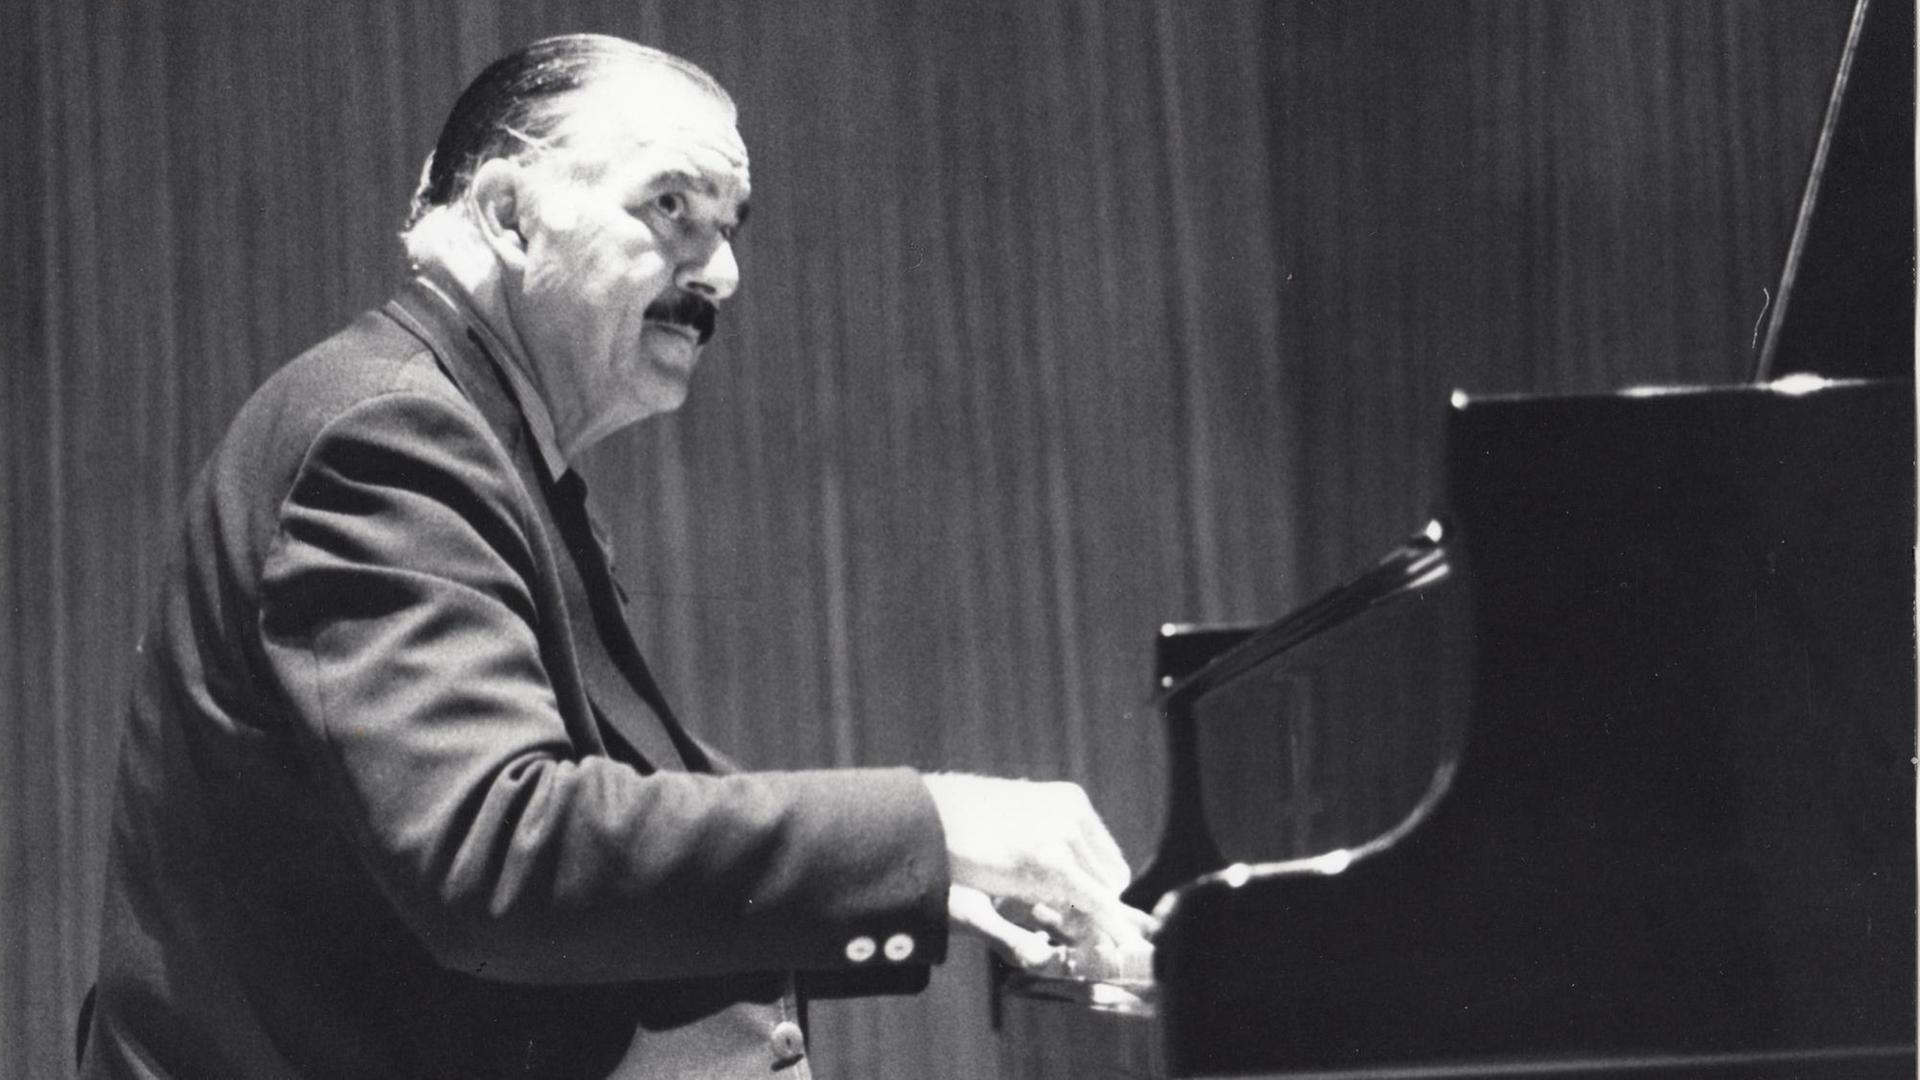 Schwarz-Weiss Aufnahme der Pianisten Jorge Bolet im Profil, am Flügel spielend 1973